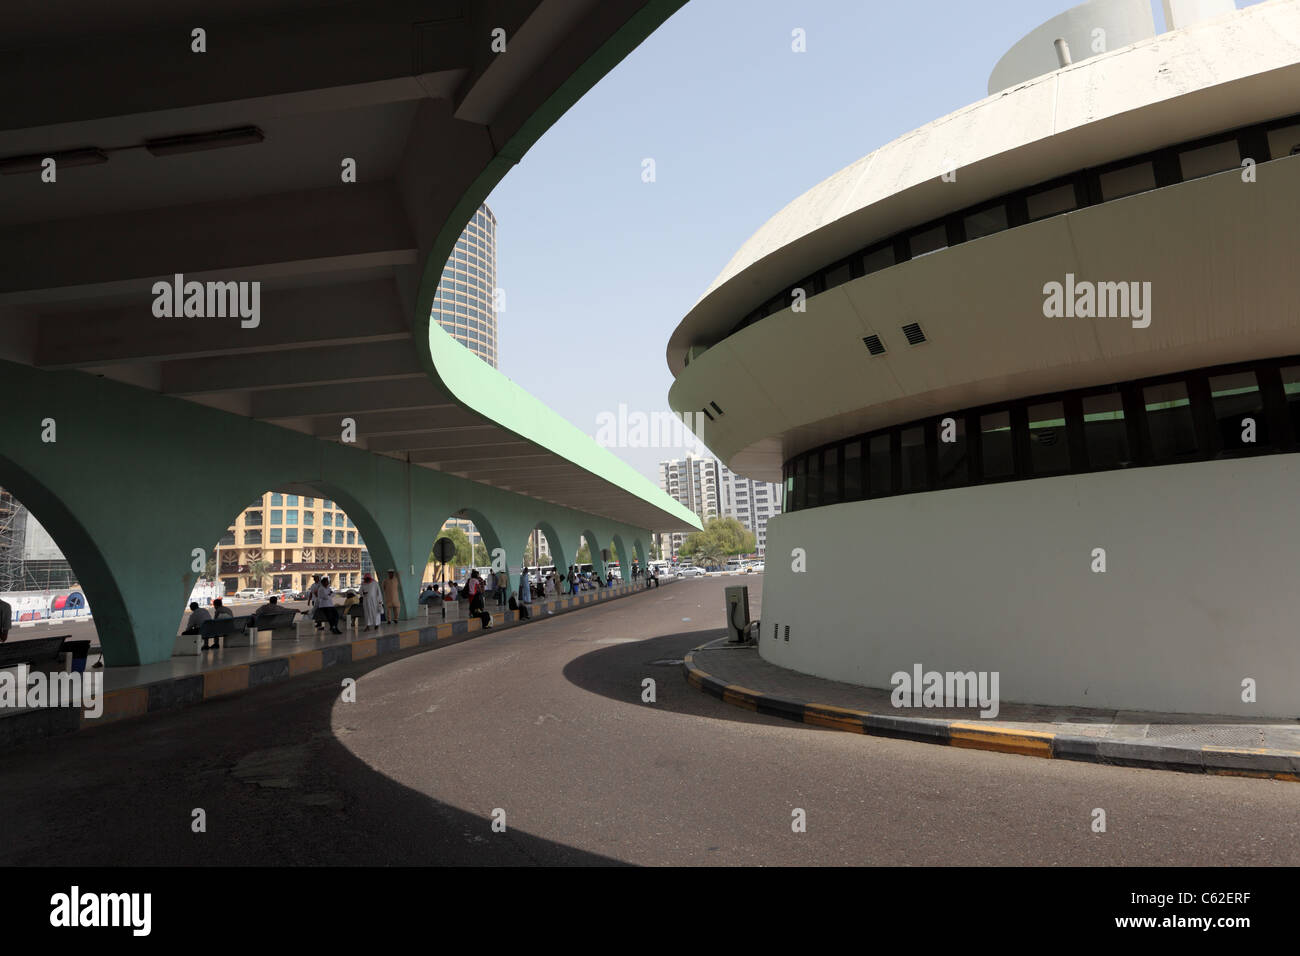 Main Bus station in Abu Dhabi, United Arab Emirates Stock Photo